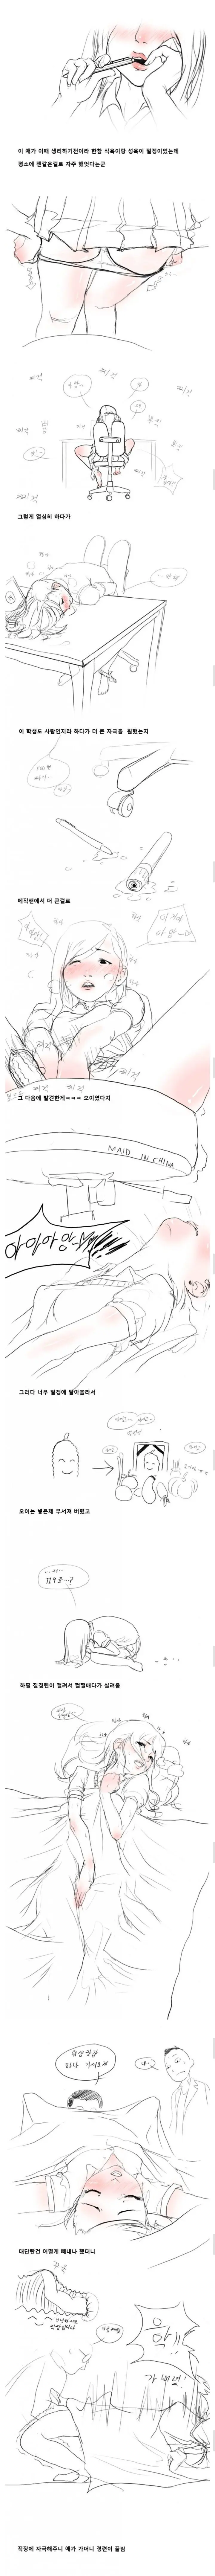 ㅇㅎ)섹급한 응급실 만화 | mbong.kr 엠봉